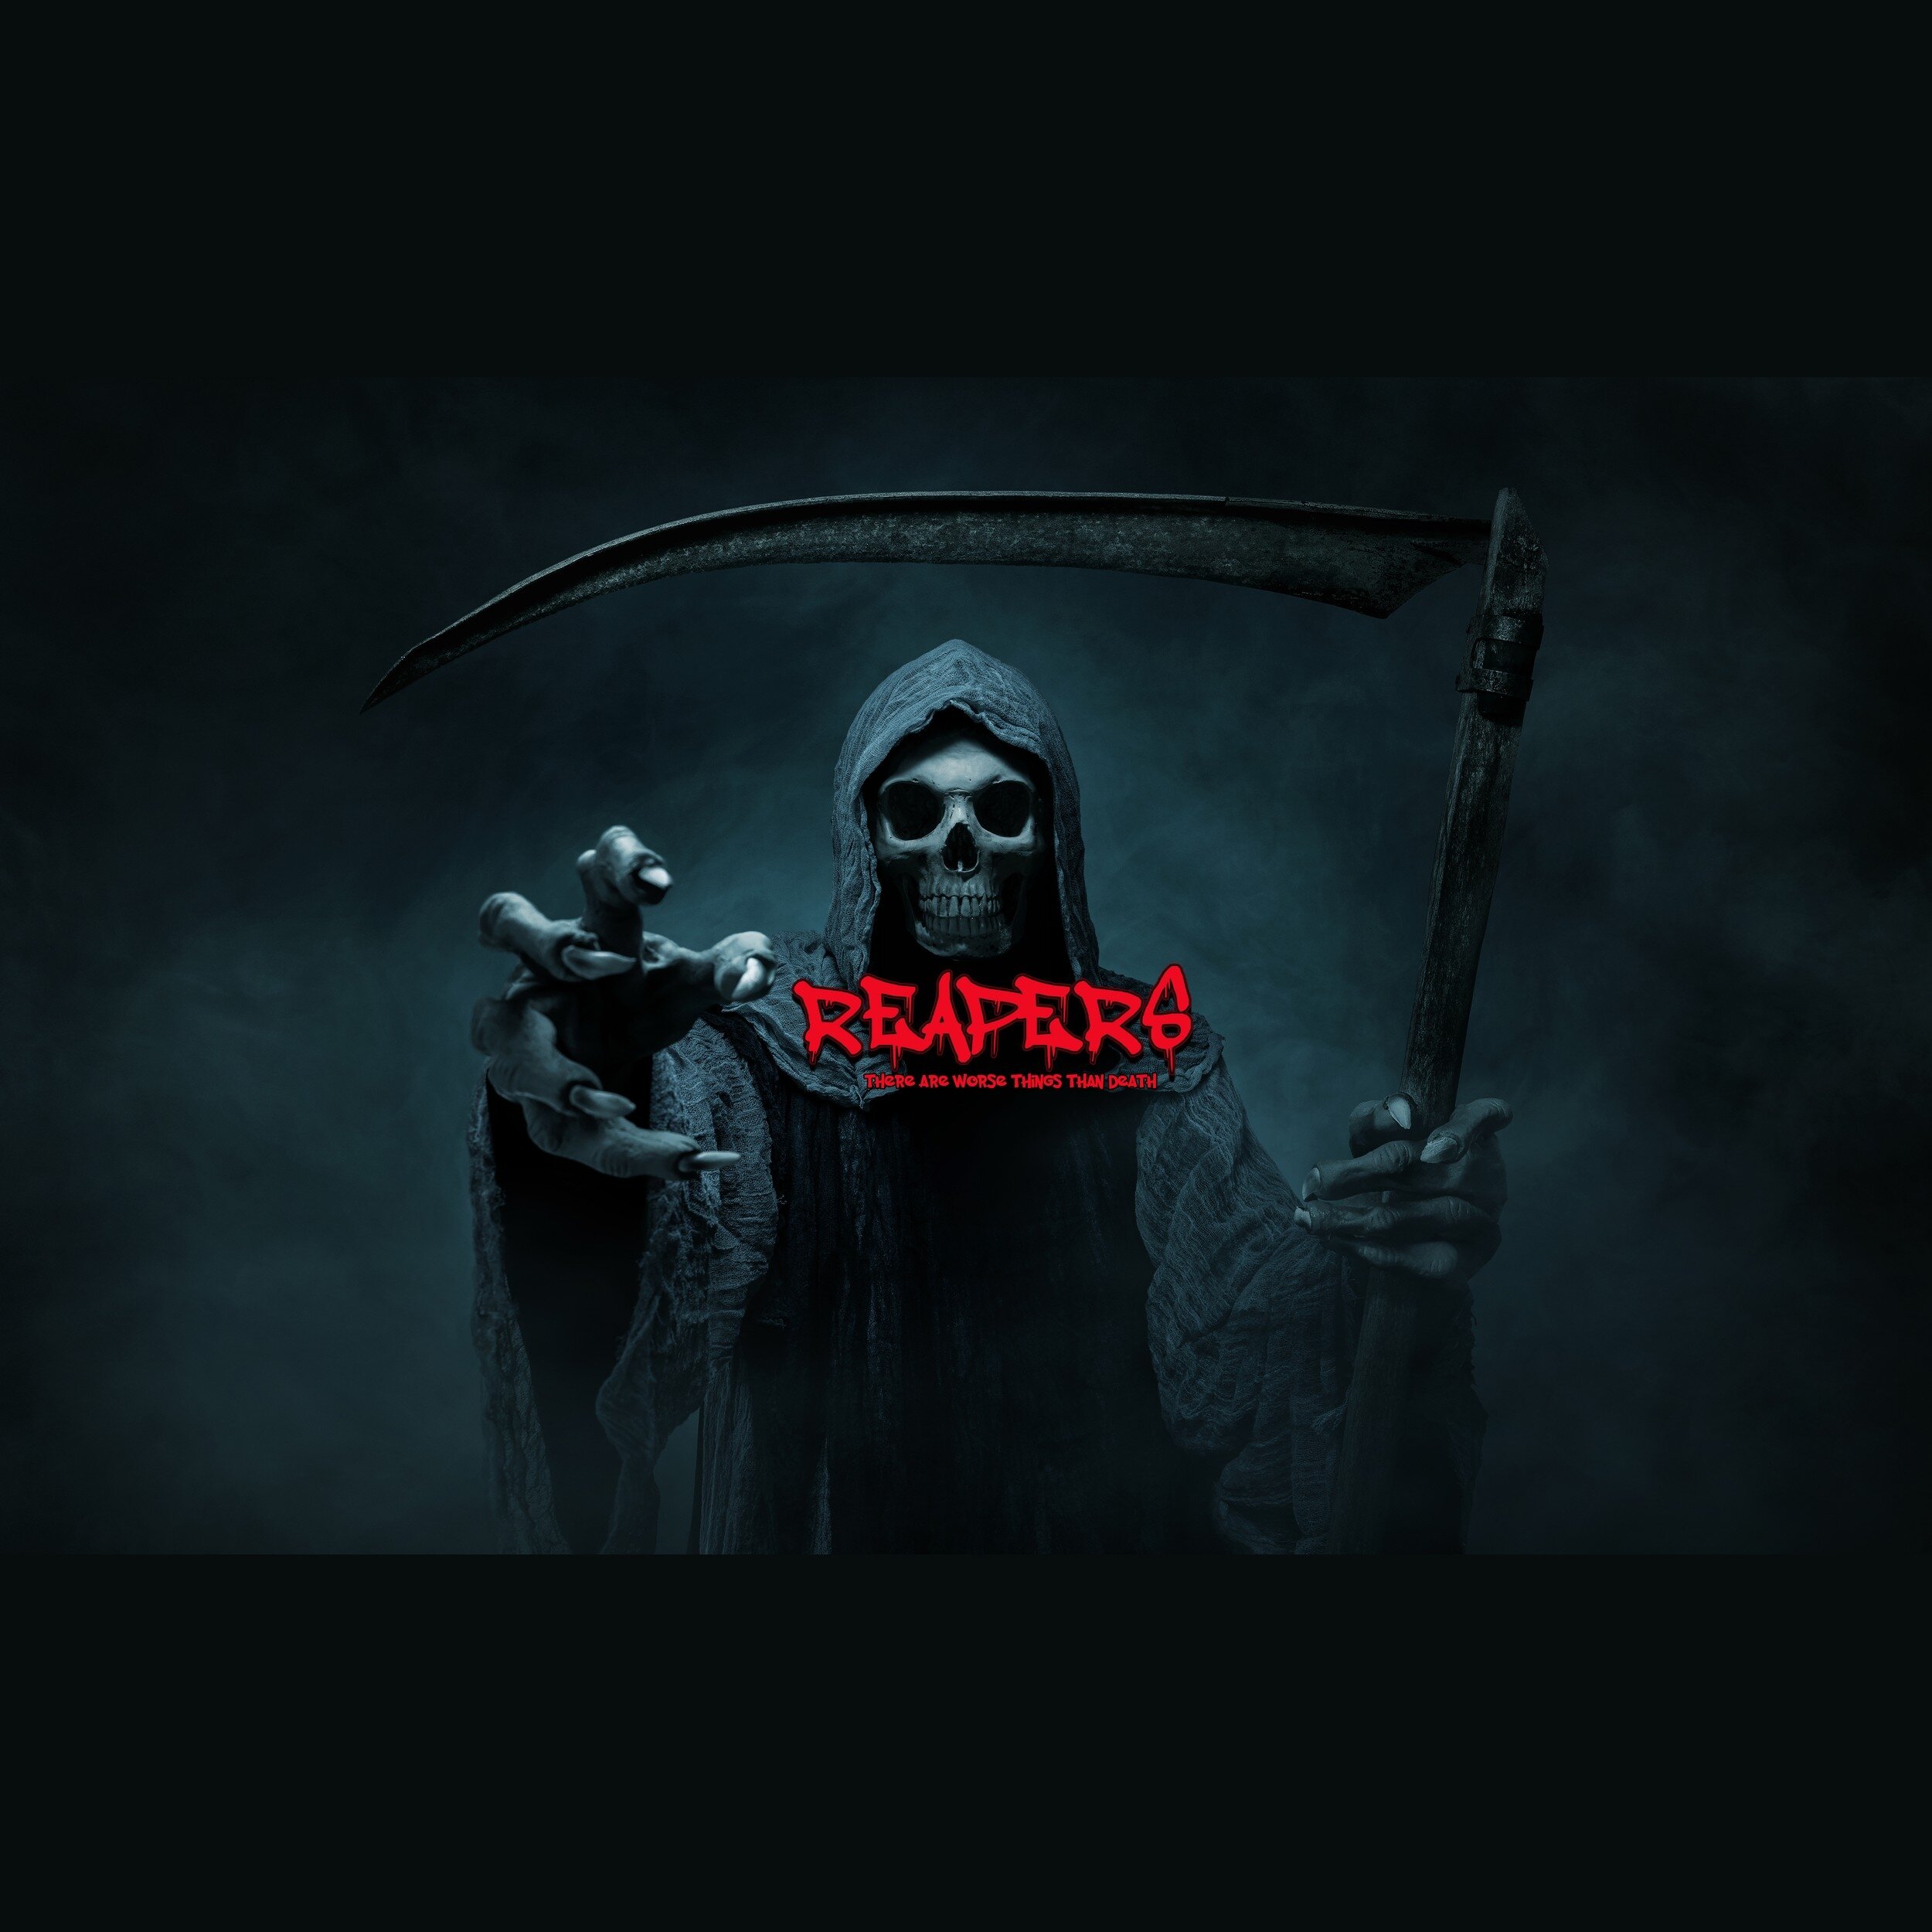 reaper